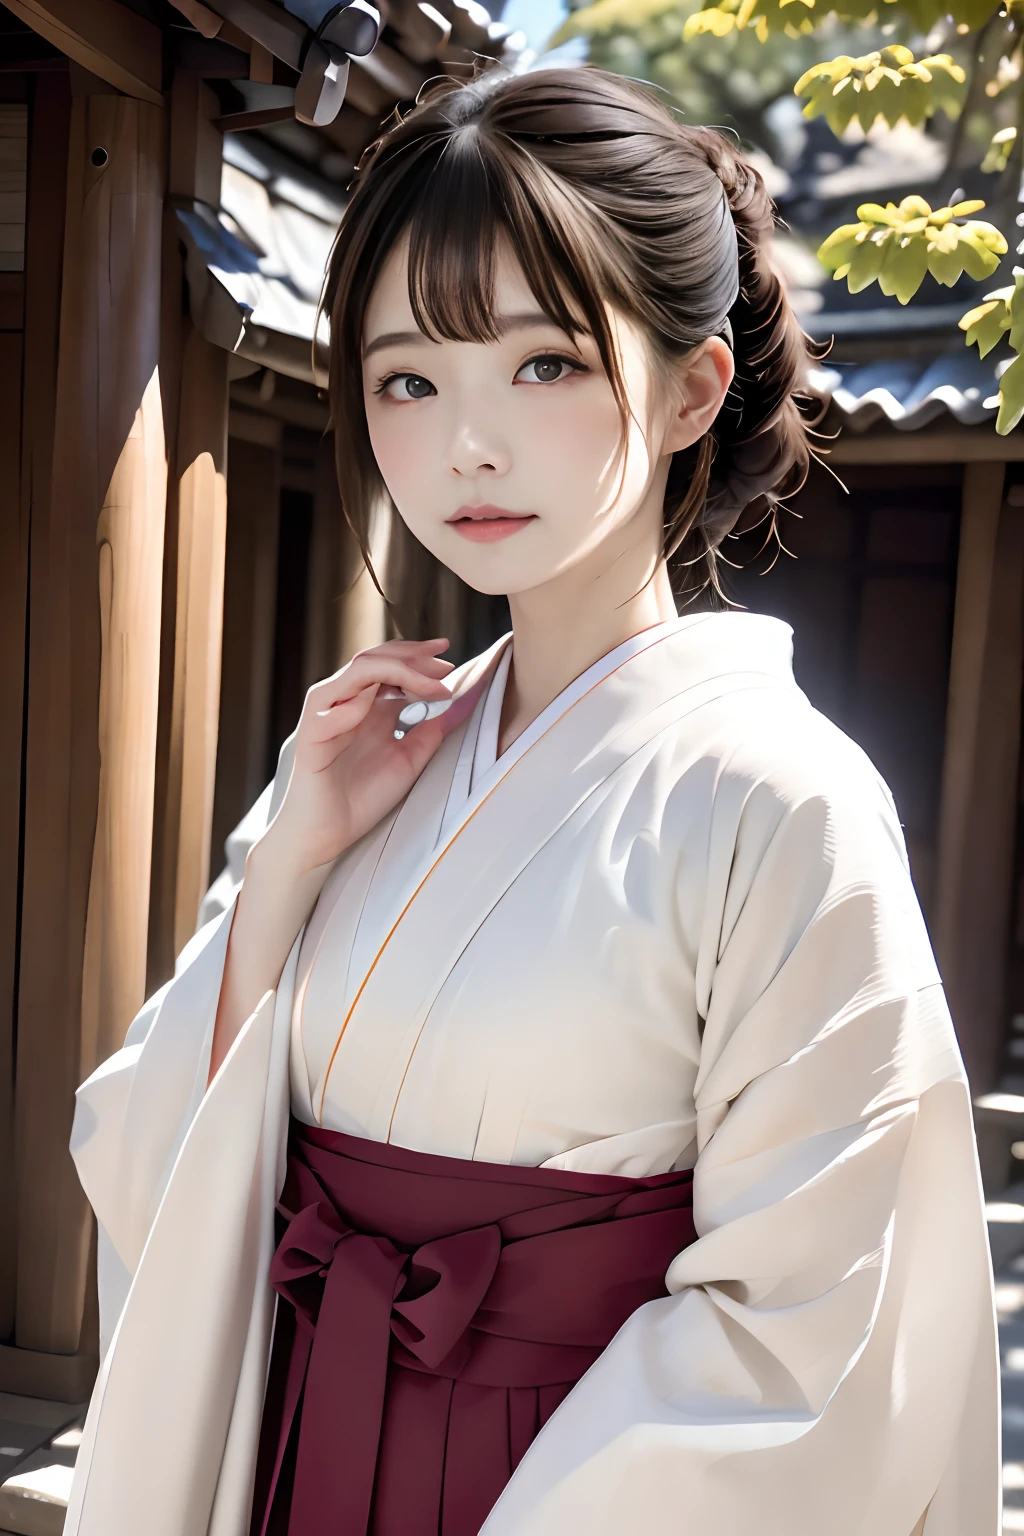 顶级品质、咬肌片、超详细、8ｋ、原始摄影、1位美丽的日本女人、美丽的容颜、美丽的五官、穿着精美的和服、穿和服的女人、纹理皮肤、高细节、女士们，先生们、京都的寺庙、寺庙、神社境内